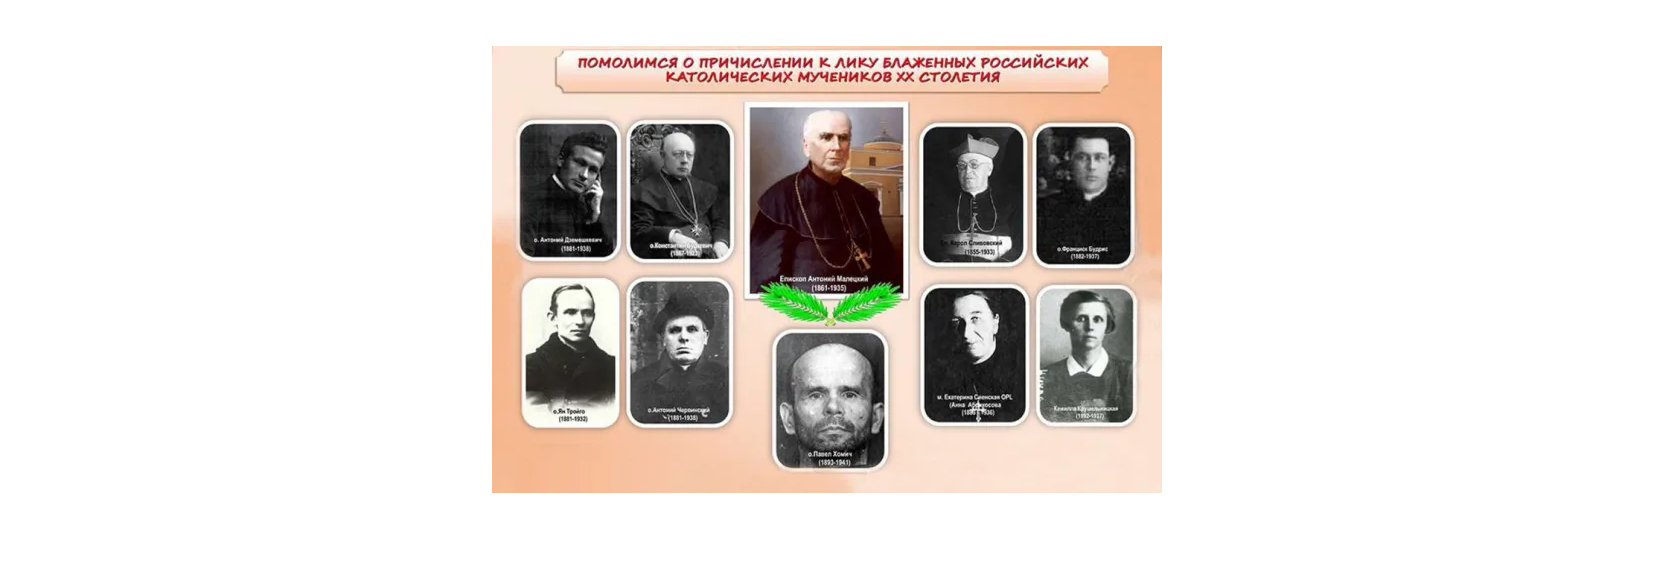 La Chiesa cattolica in Russia riorganizza le cause dei martiri del XX secolo